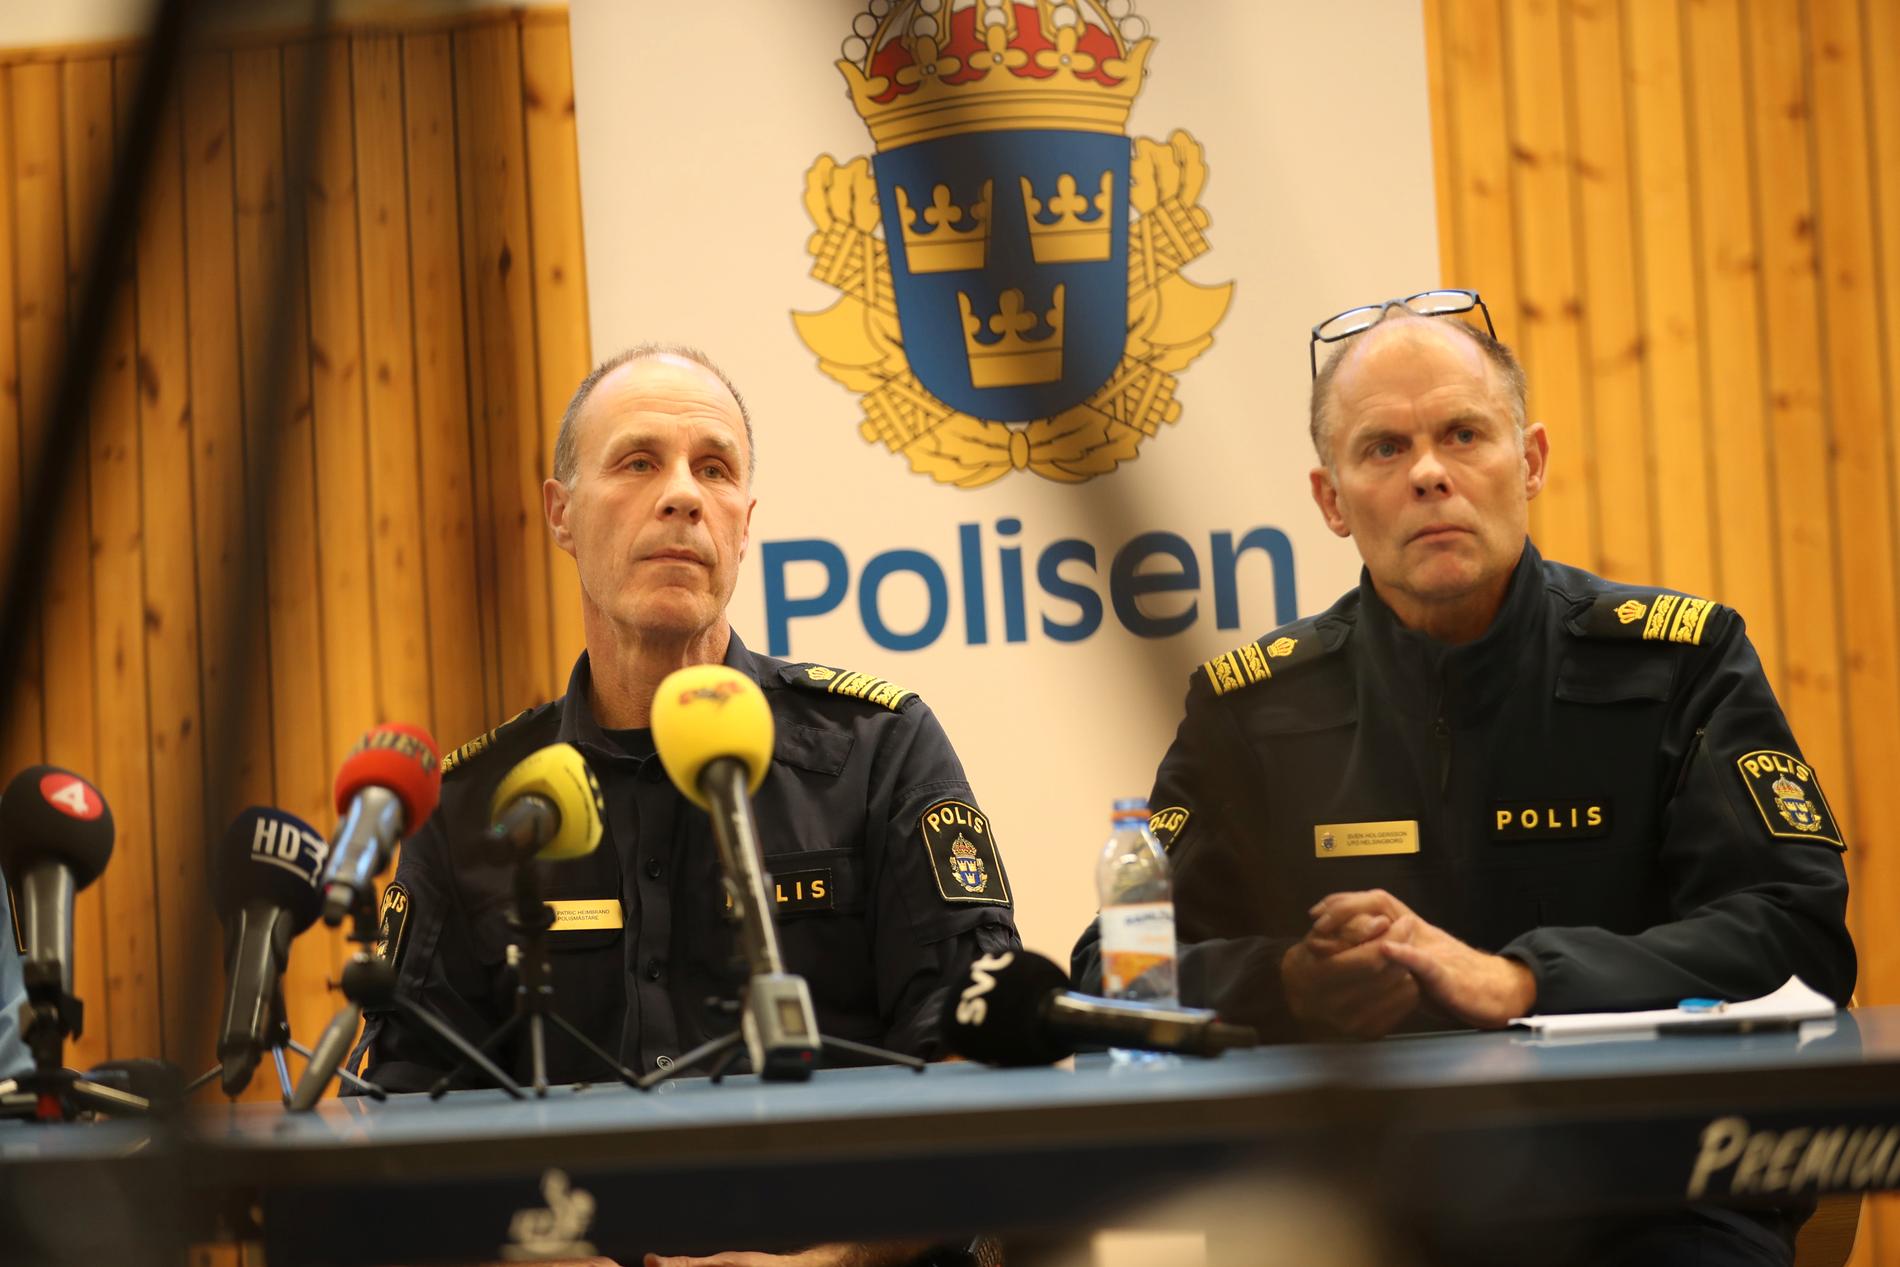 Polisen i Helsingborg håller presskonferens om sprängningen. Patric Heimbrand, polisområdeschef och Sven Holgersson, lokalområdespolis.